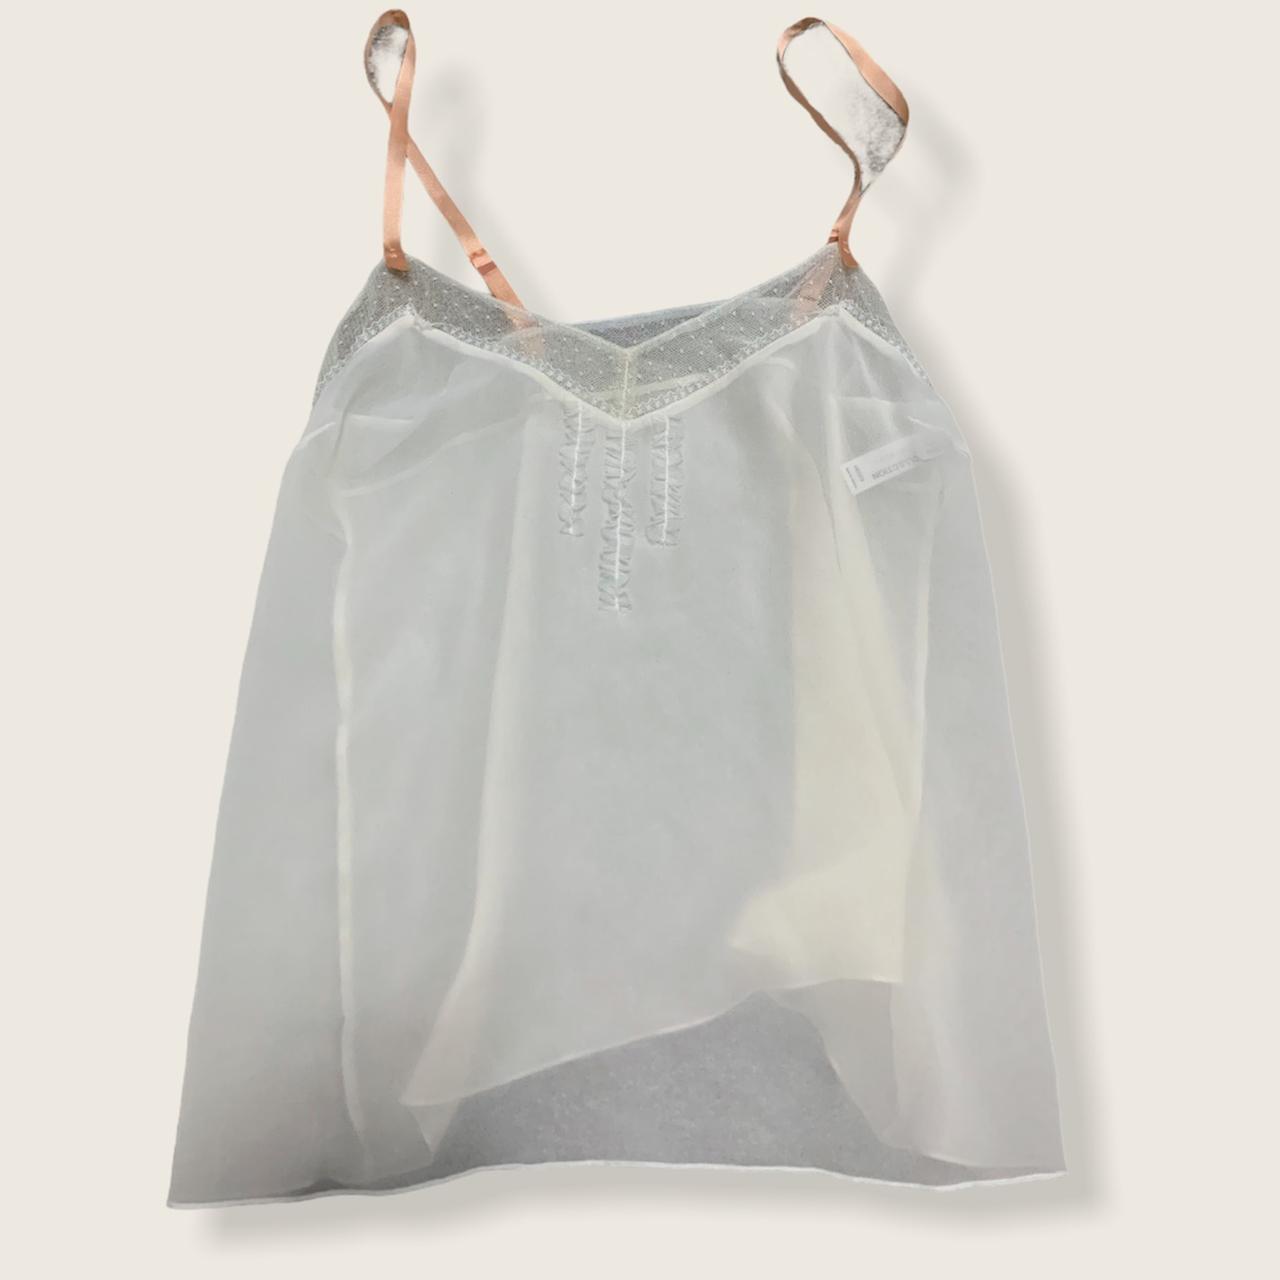 Product Image 1 - Nina ricci cream camisole 

Size: